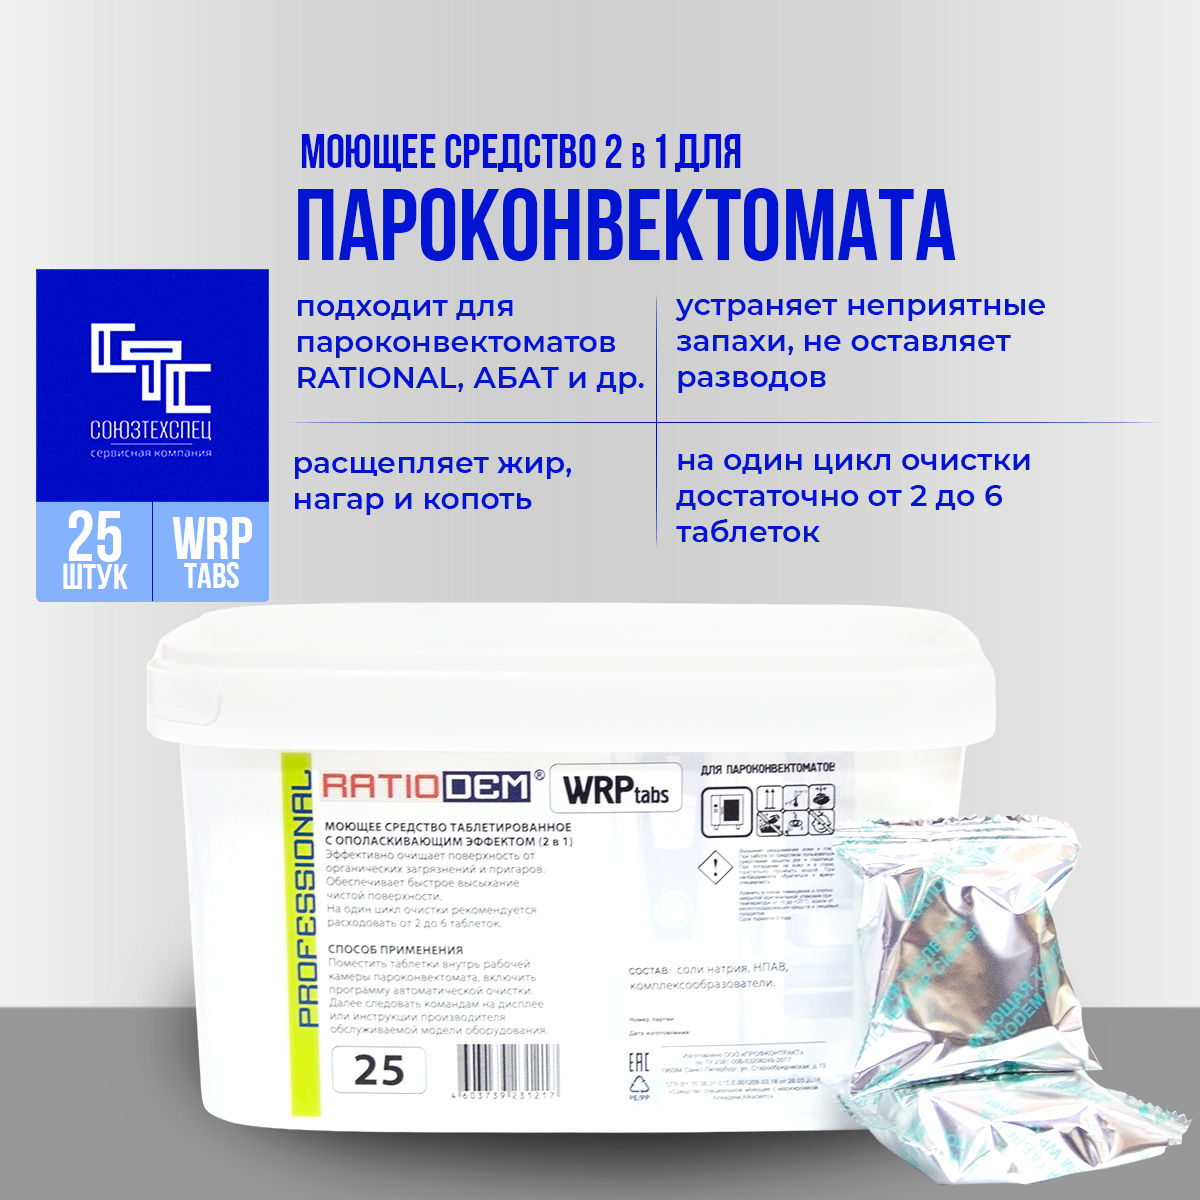 Моющие таблетки c ополаскивающим эффектом для пароконвектоматов RatioDem WRP tabs, 25 штук